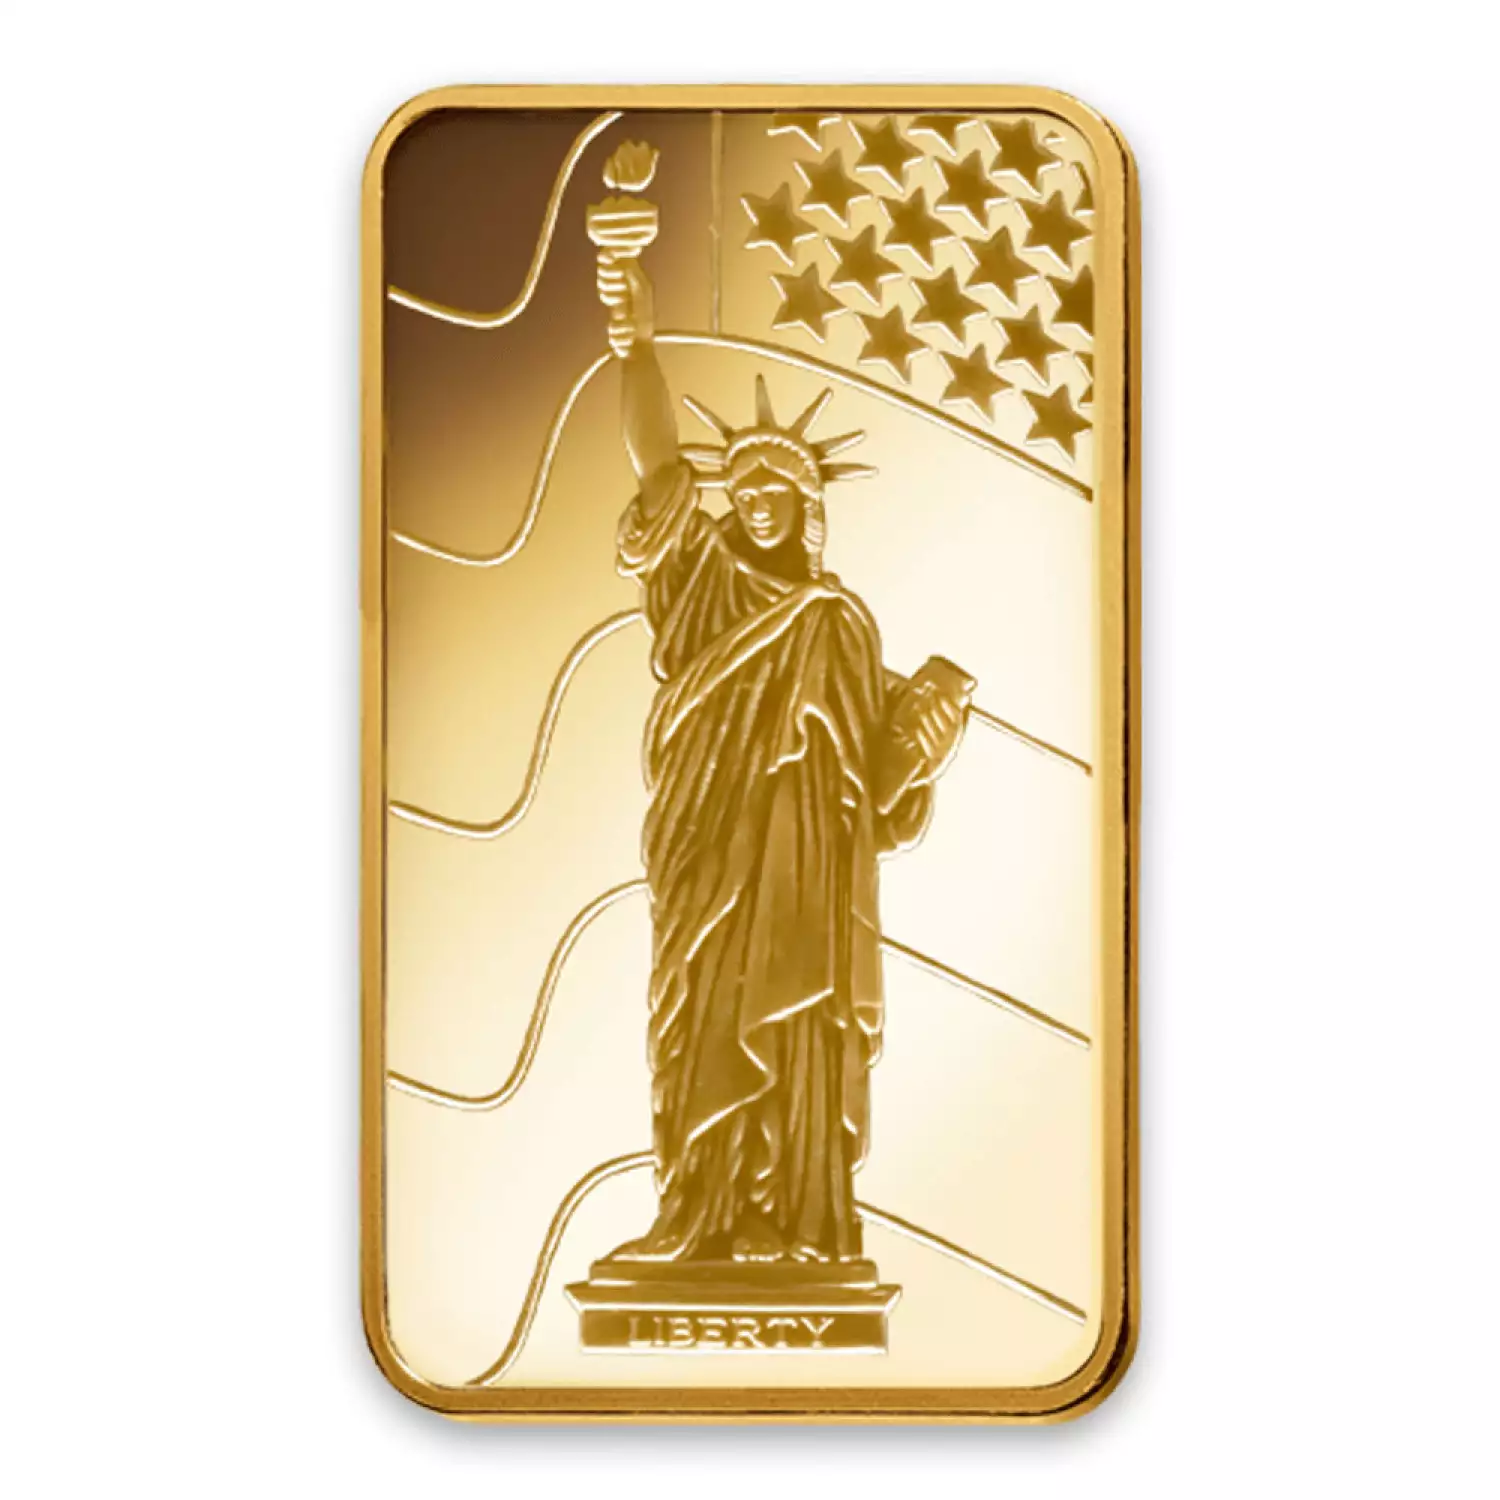 1oz PAMP Gold Bar - Liberty (2)